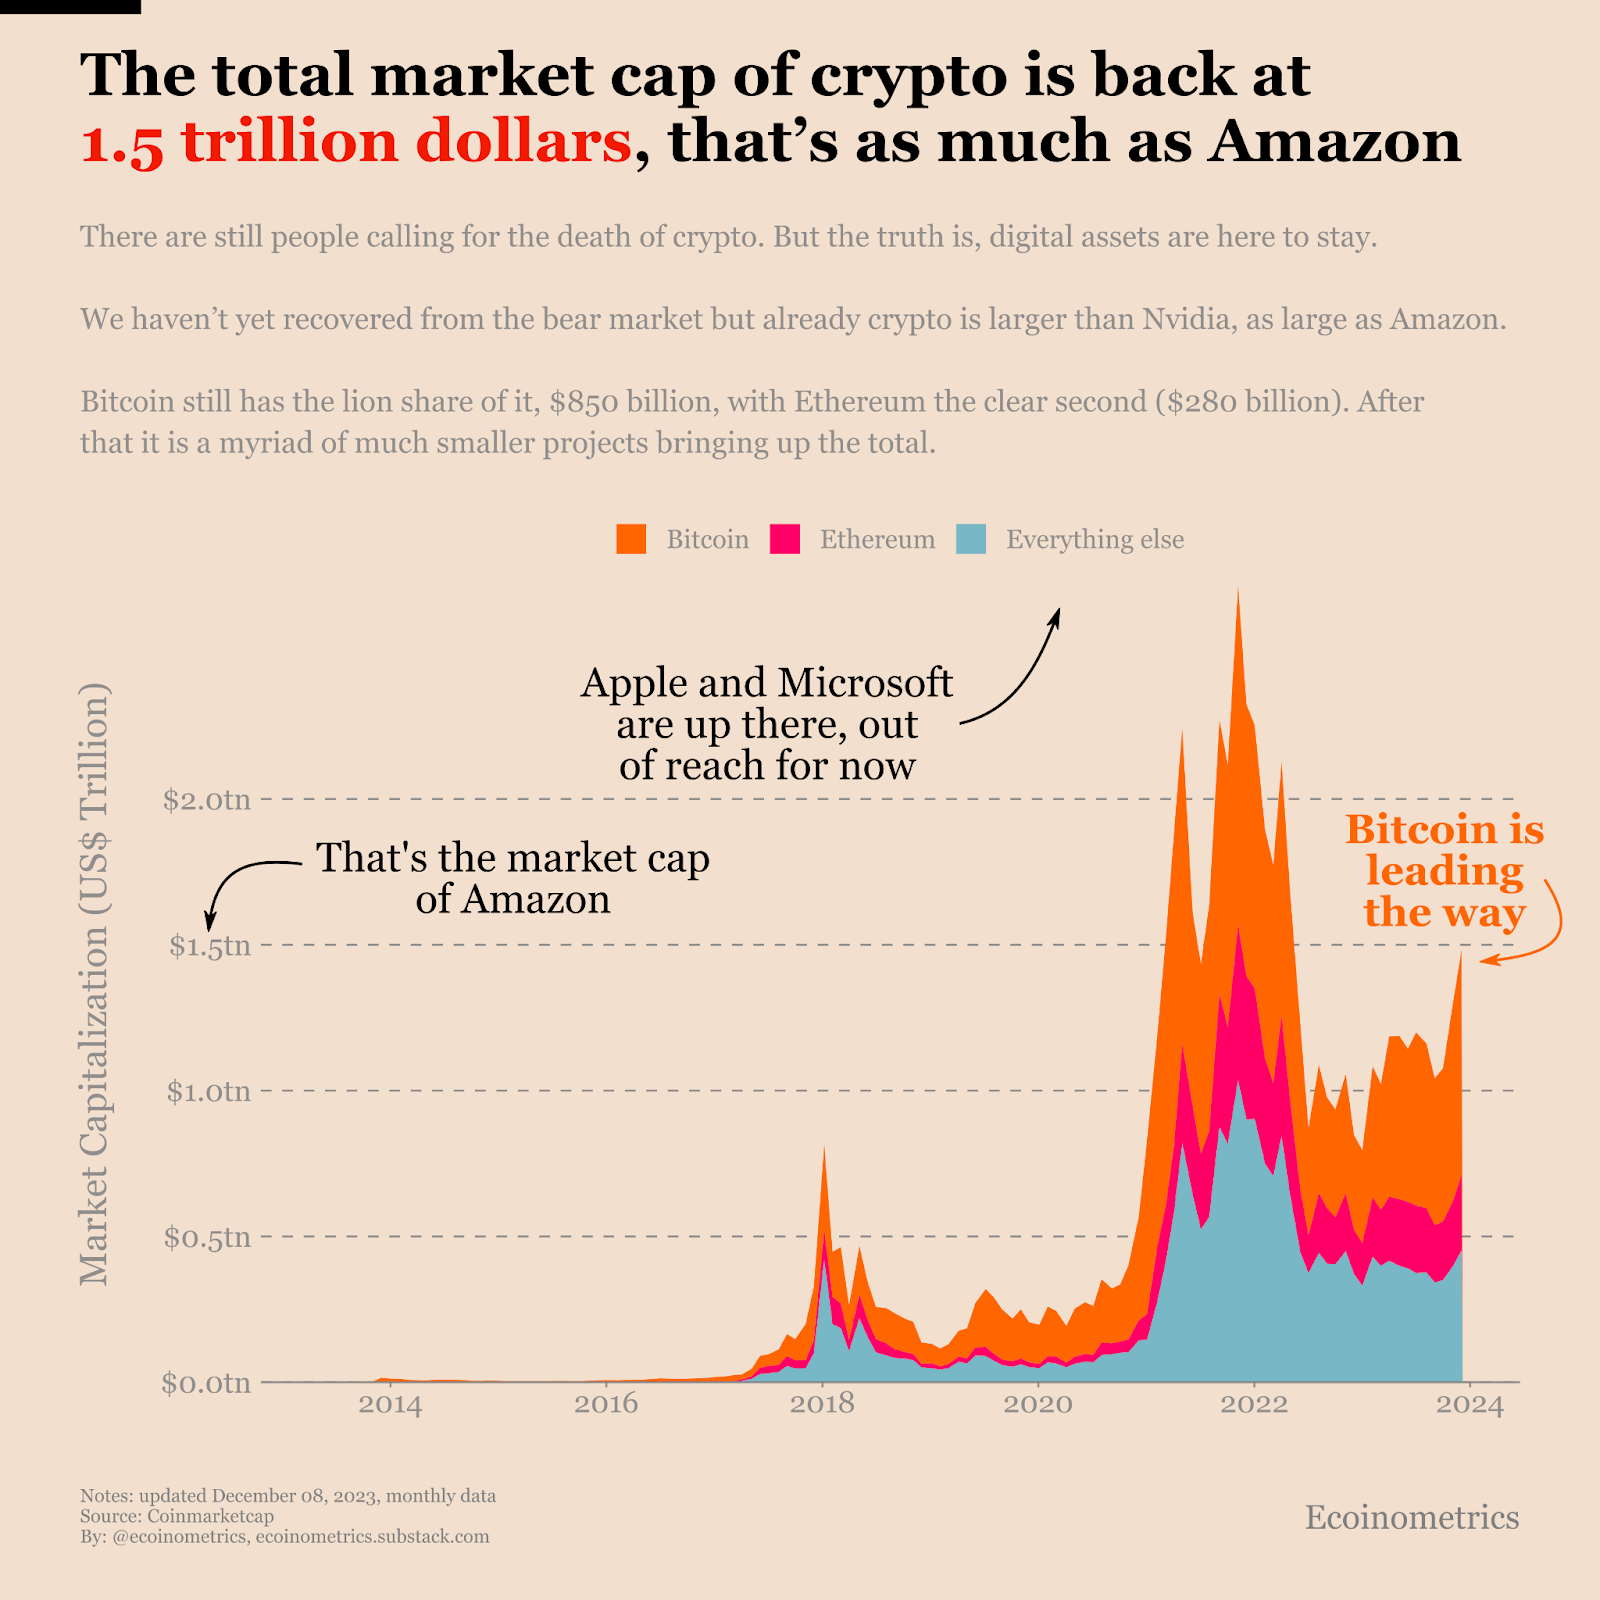 La capitalización bursátil total de bitcoin, ethereum y todo el mercado de criptomonedas. Ecoinometrics